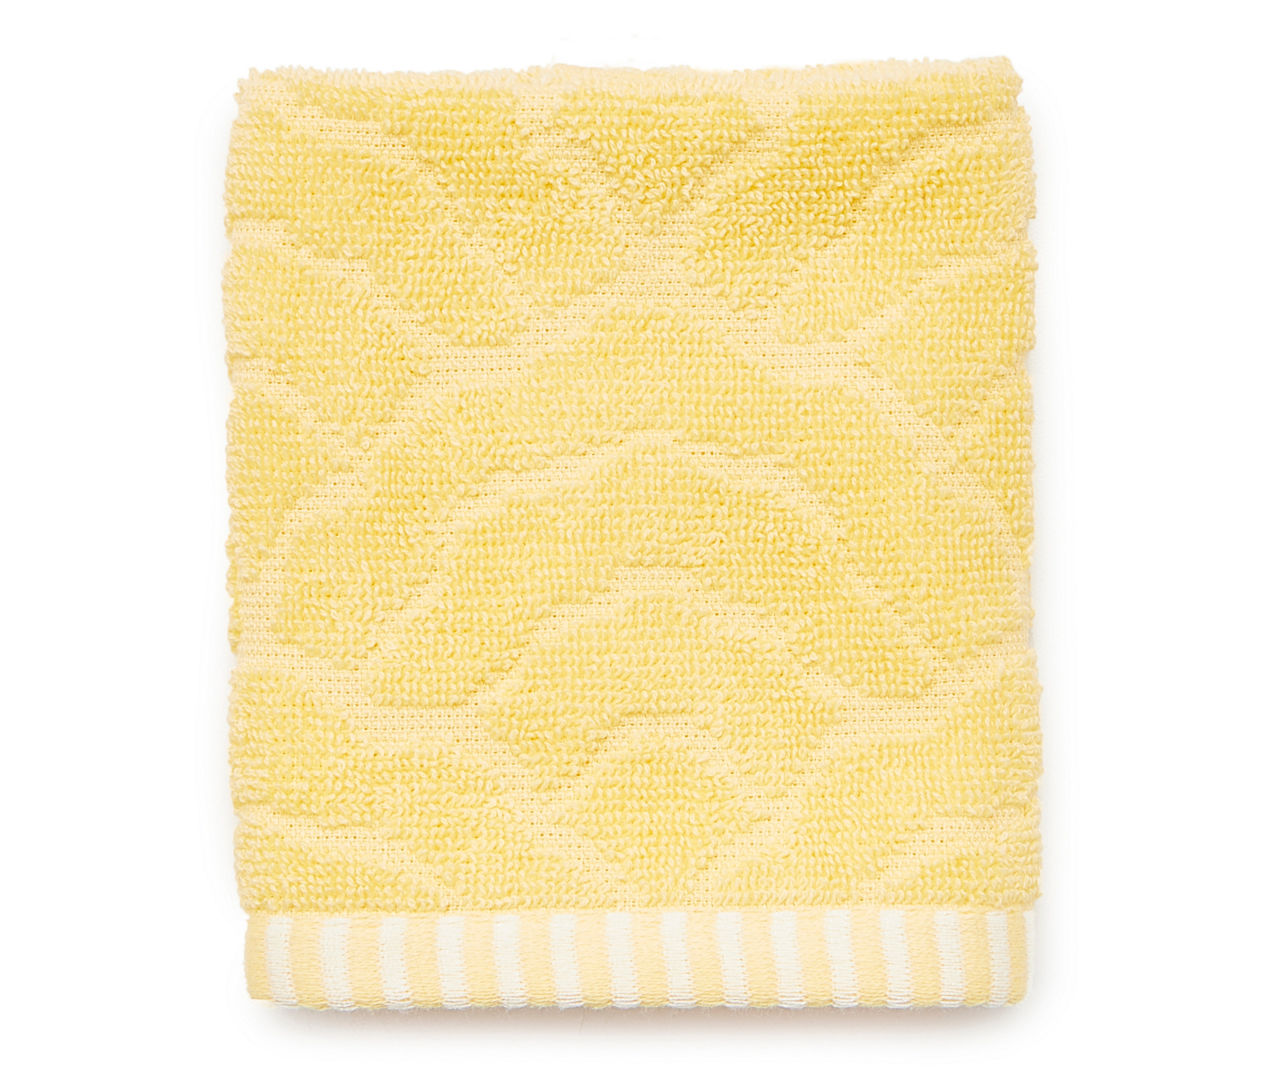 Aprima Cashmere Tan Bath Towel